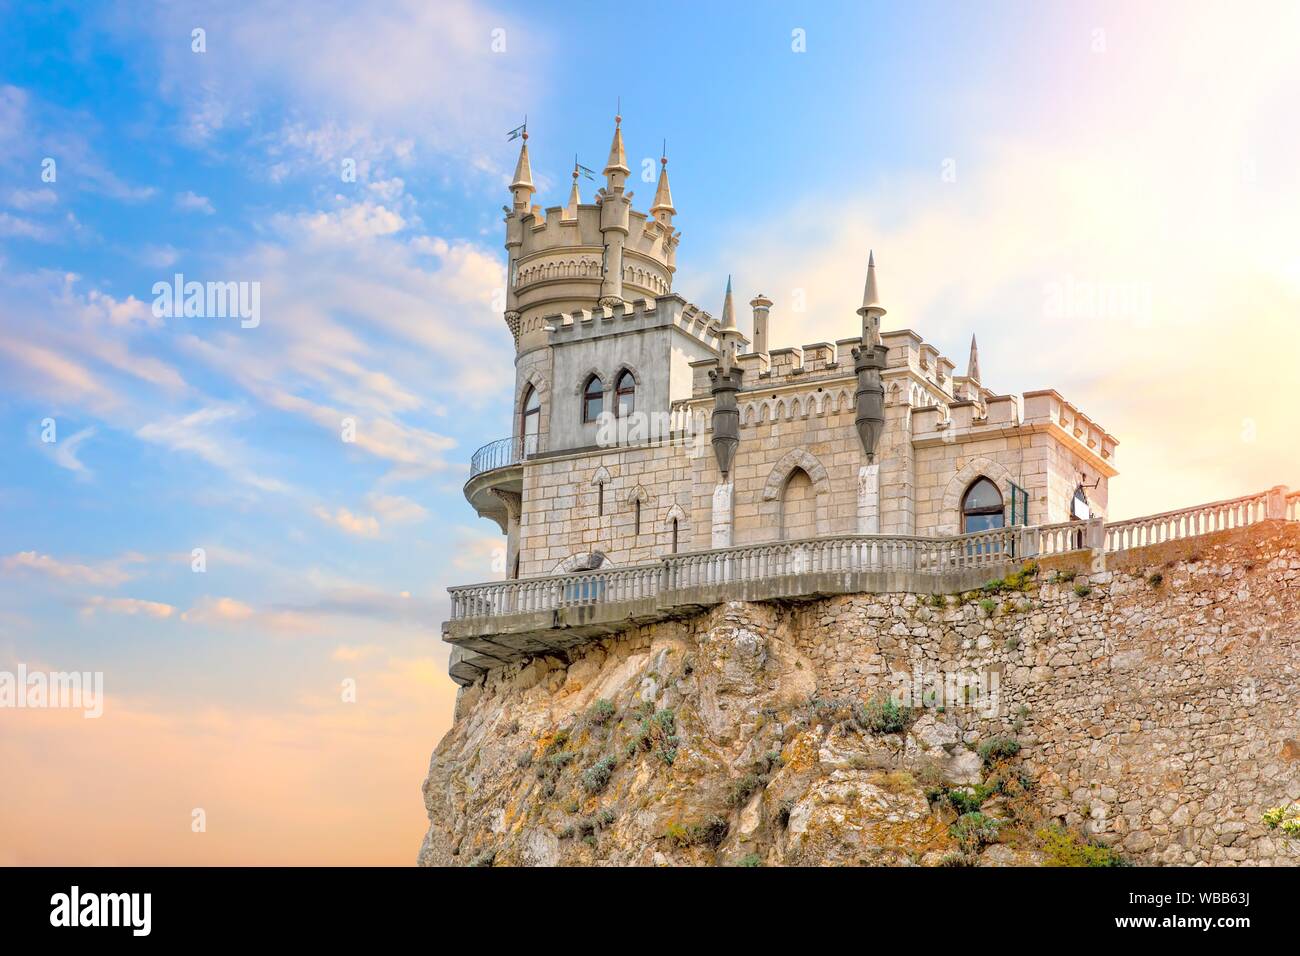 Schöne Aussicht auf das Schwalbennest Schloss im Himmel, Krim, Ukraine. Stockfoto